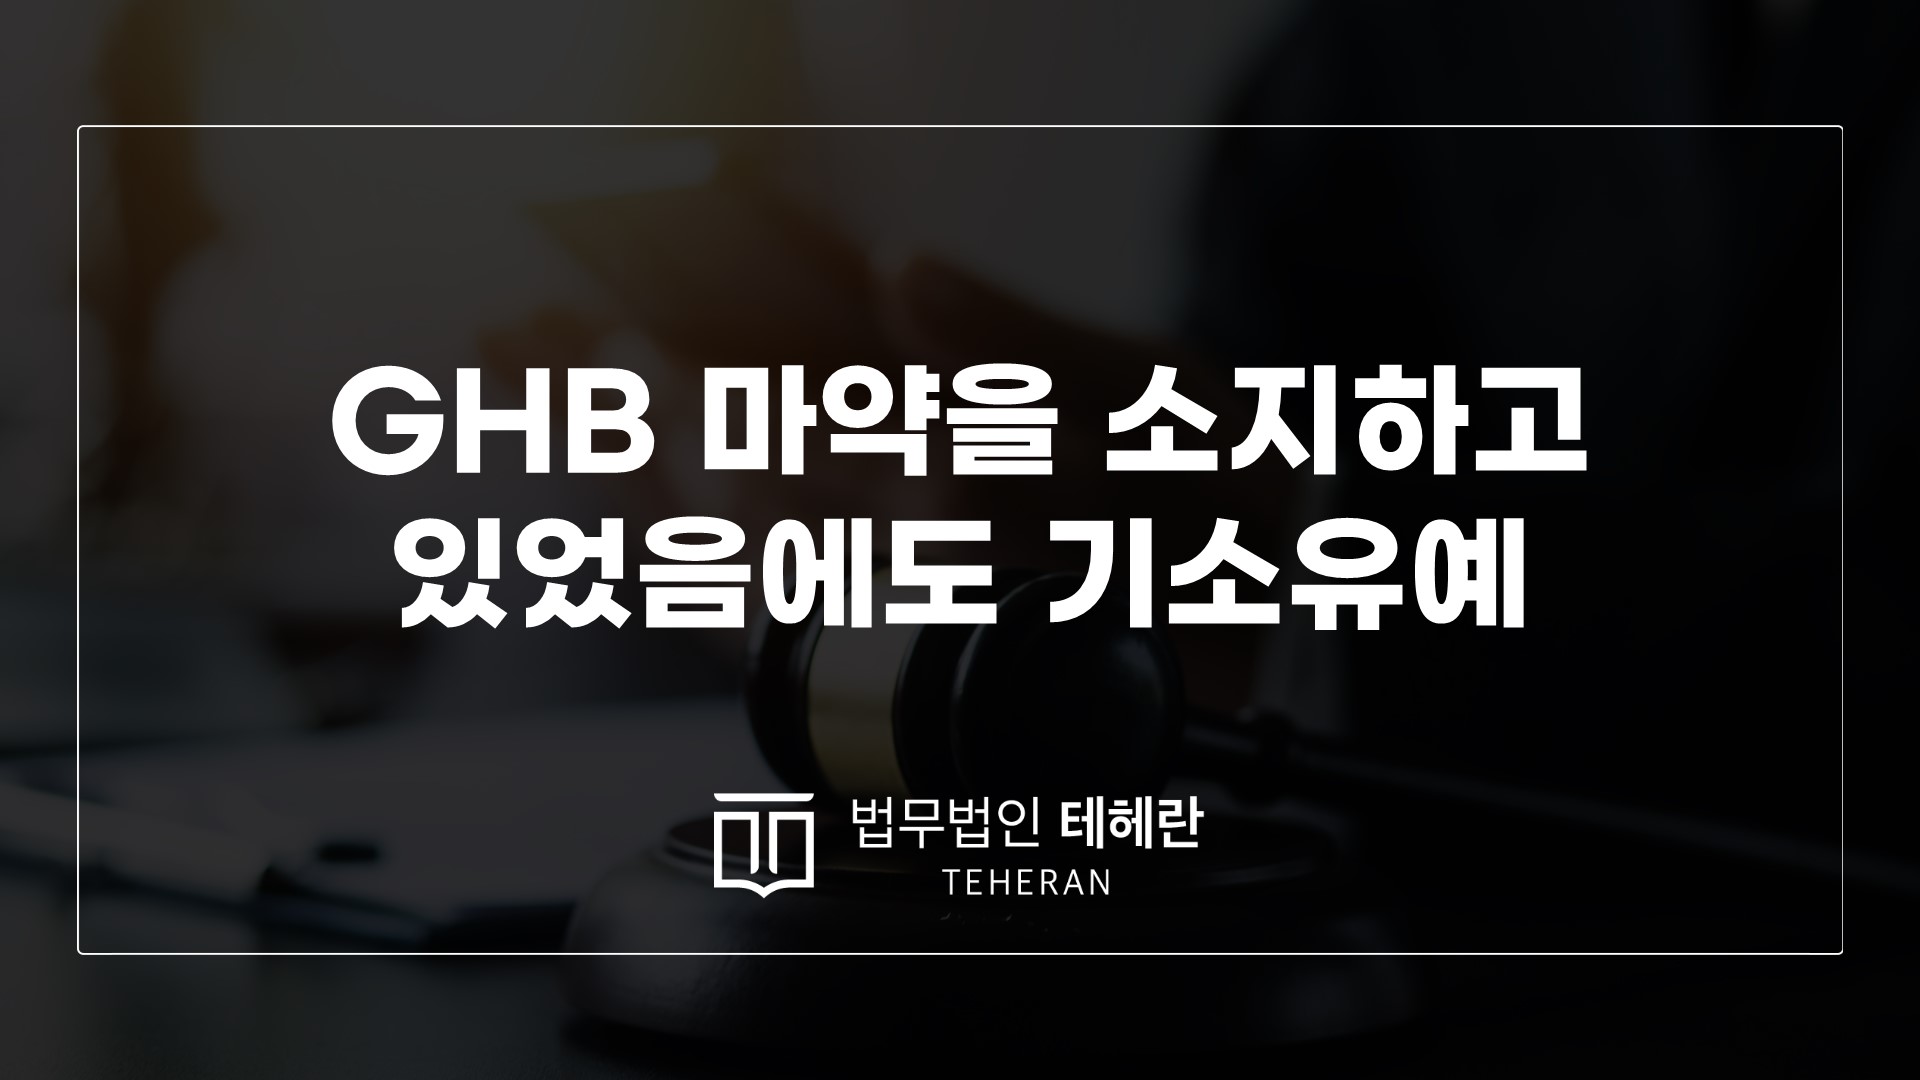 GHB 데이트강간약물처벌 필로폰소지혐의